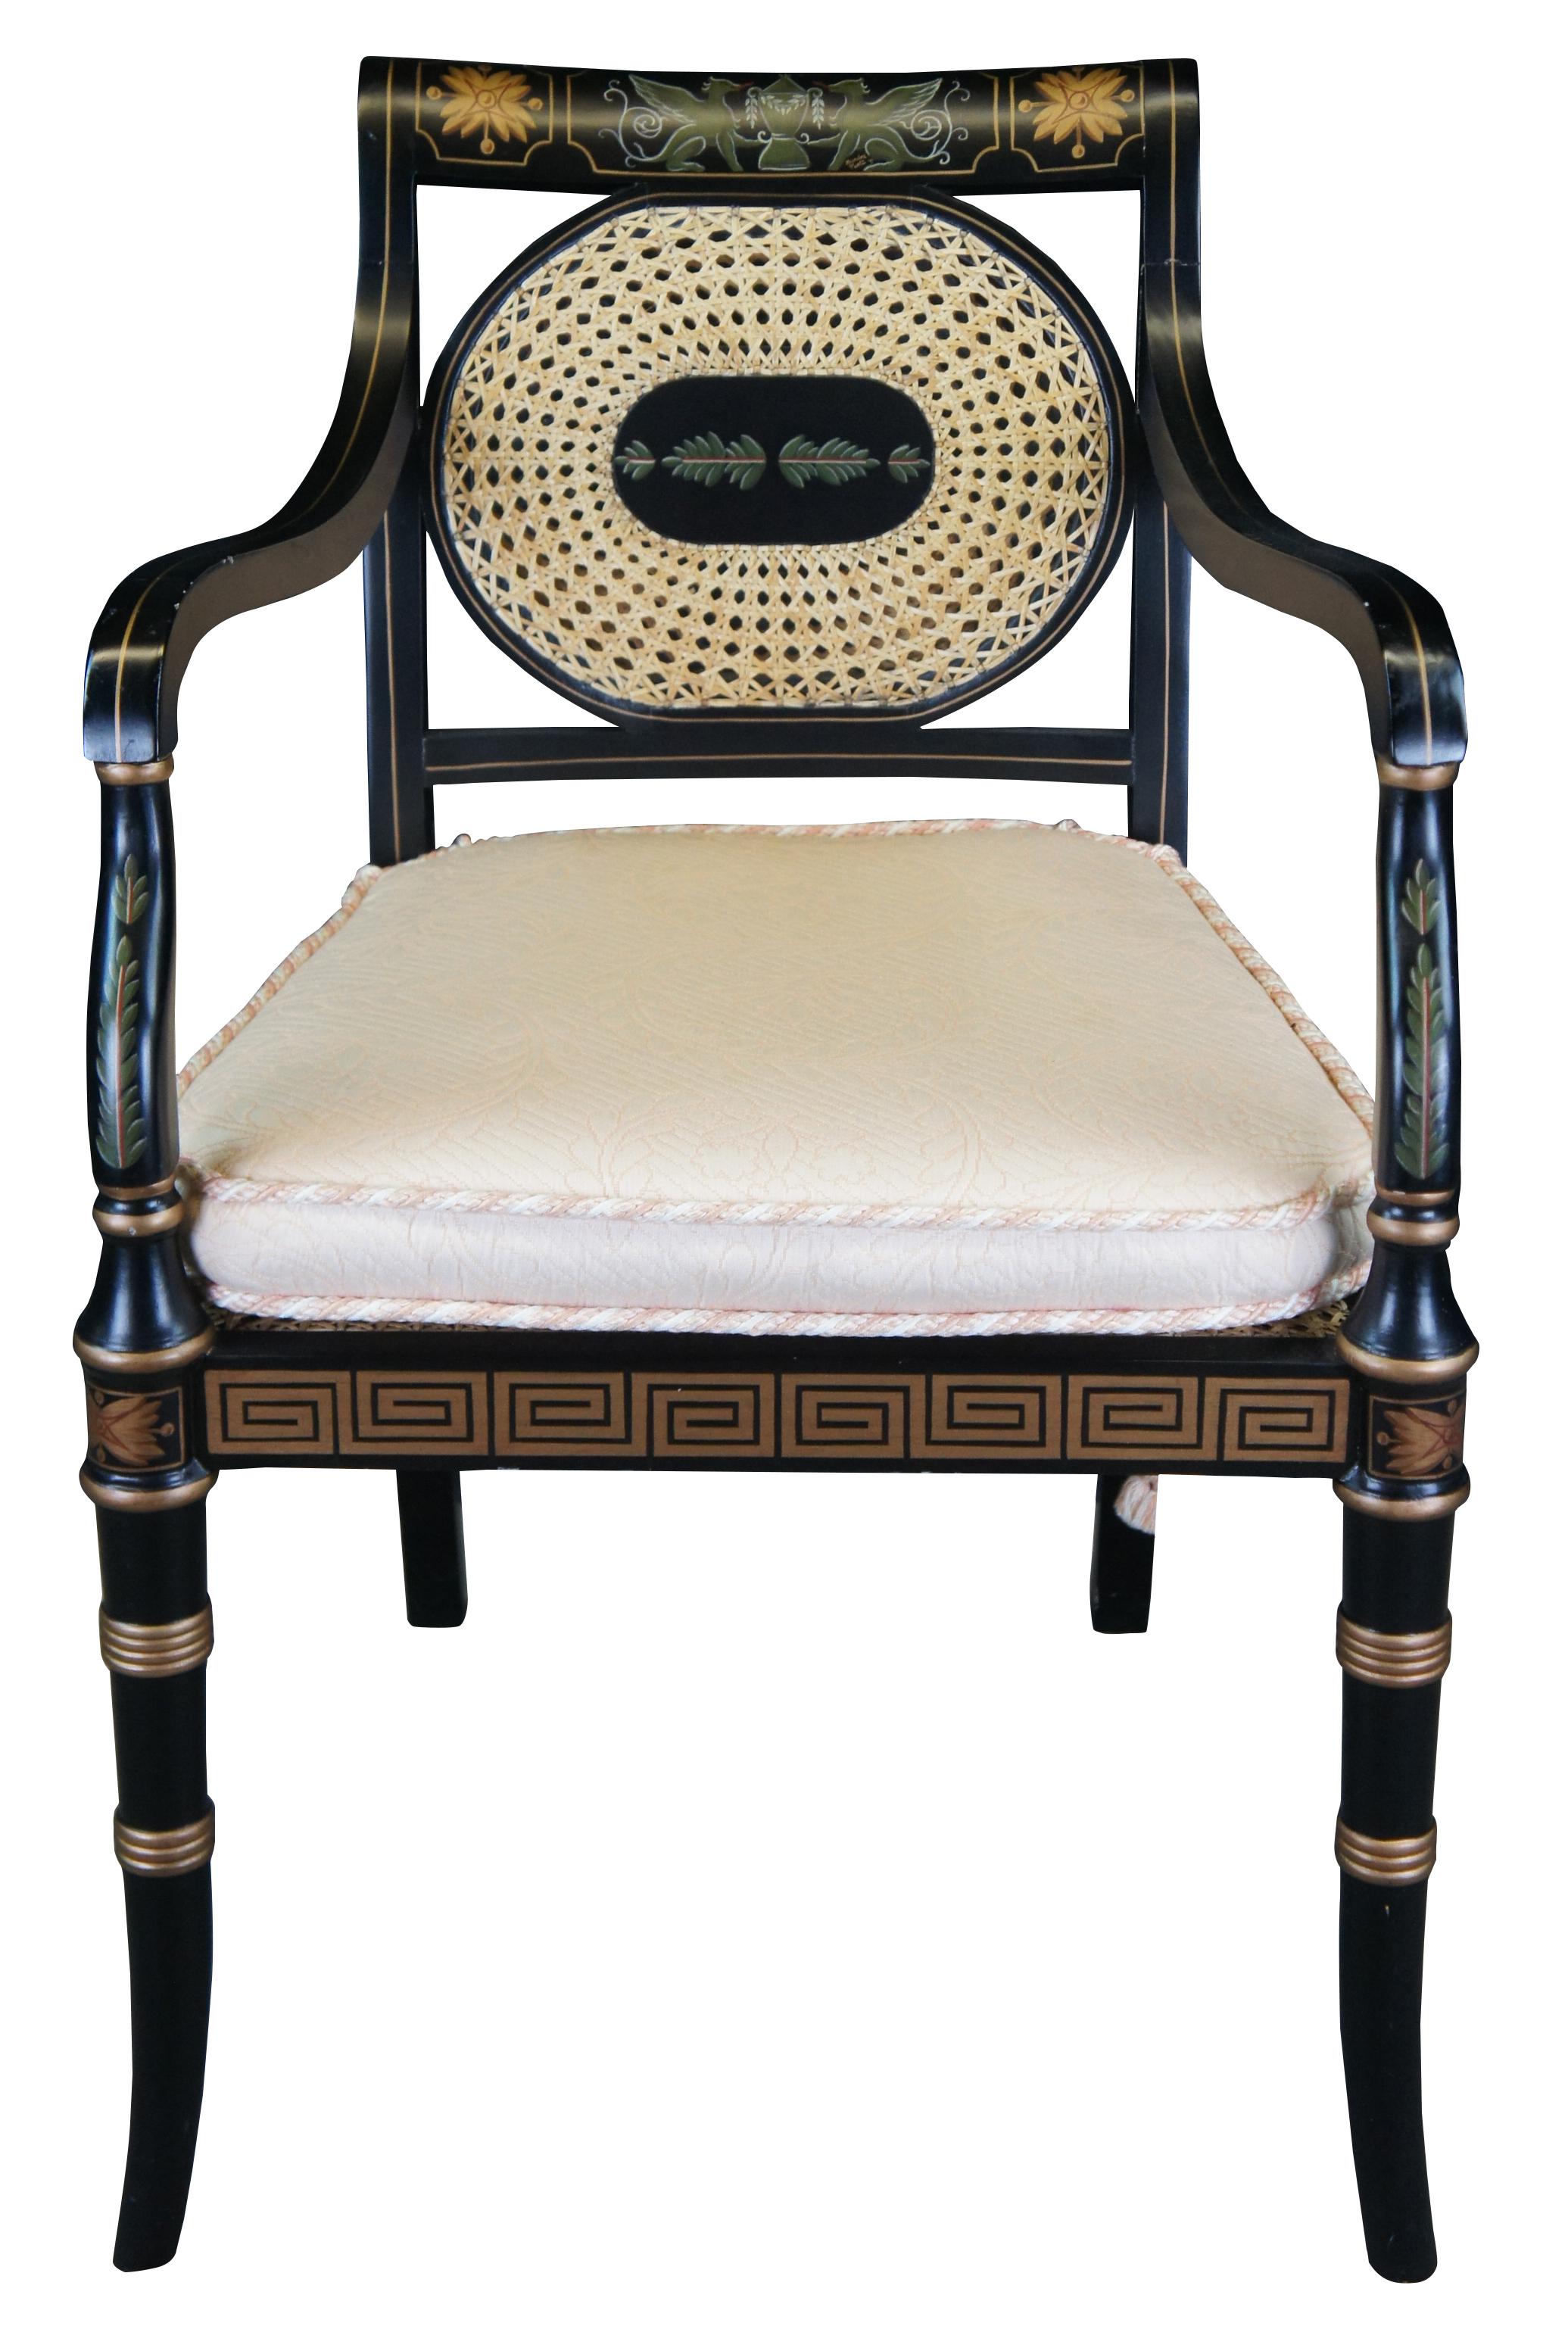 Schwarz lackierter Armlehnstuhl im englischen Regency-Stil mit Sitz und Rückenlehne aus Schilfrohr. Mit goldenen Rippenborten, einer Schürze mit griechischem Schlüssel, Schnüren, Blattmalereien und einem Greifenpaar, das eine Urne hält, auf der